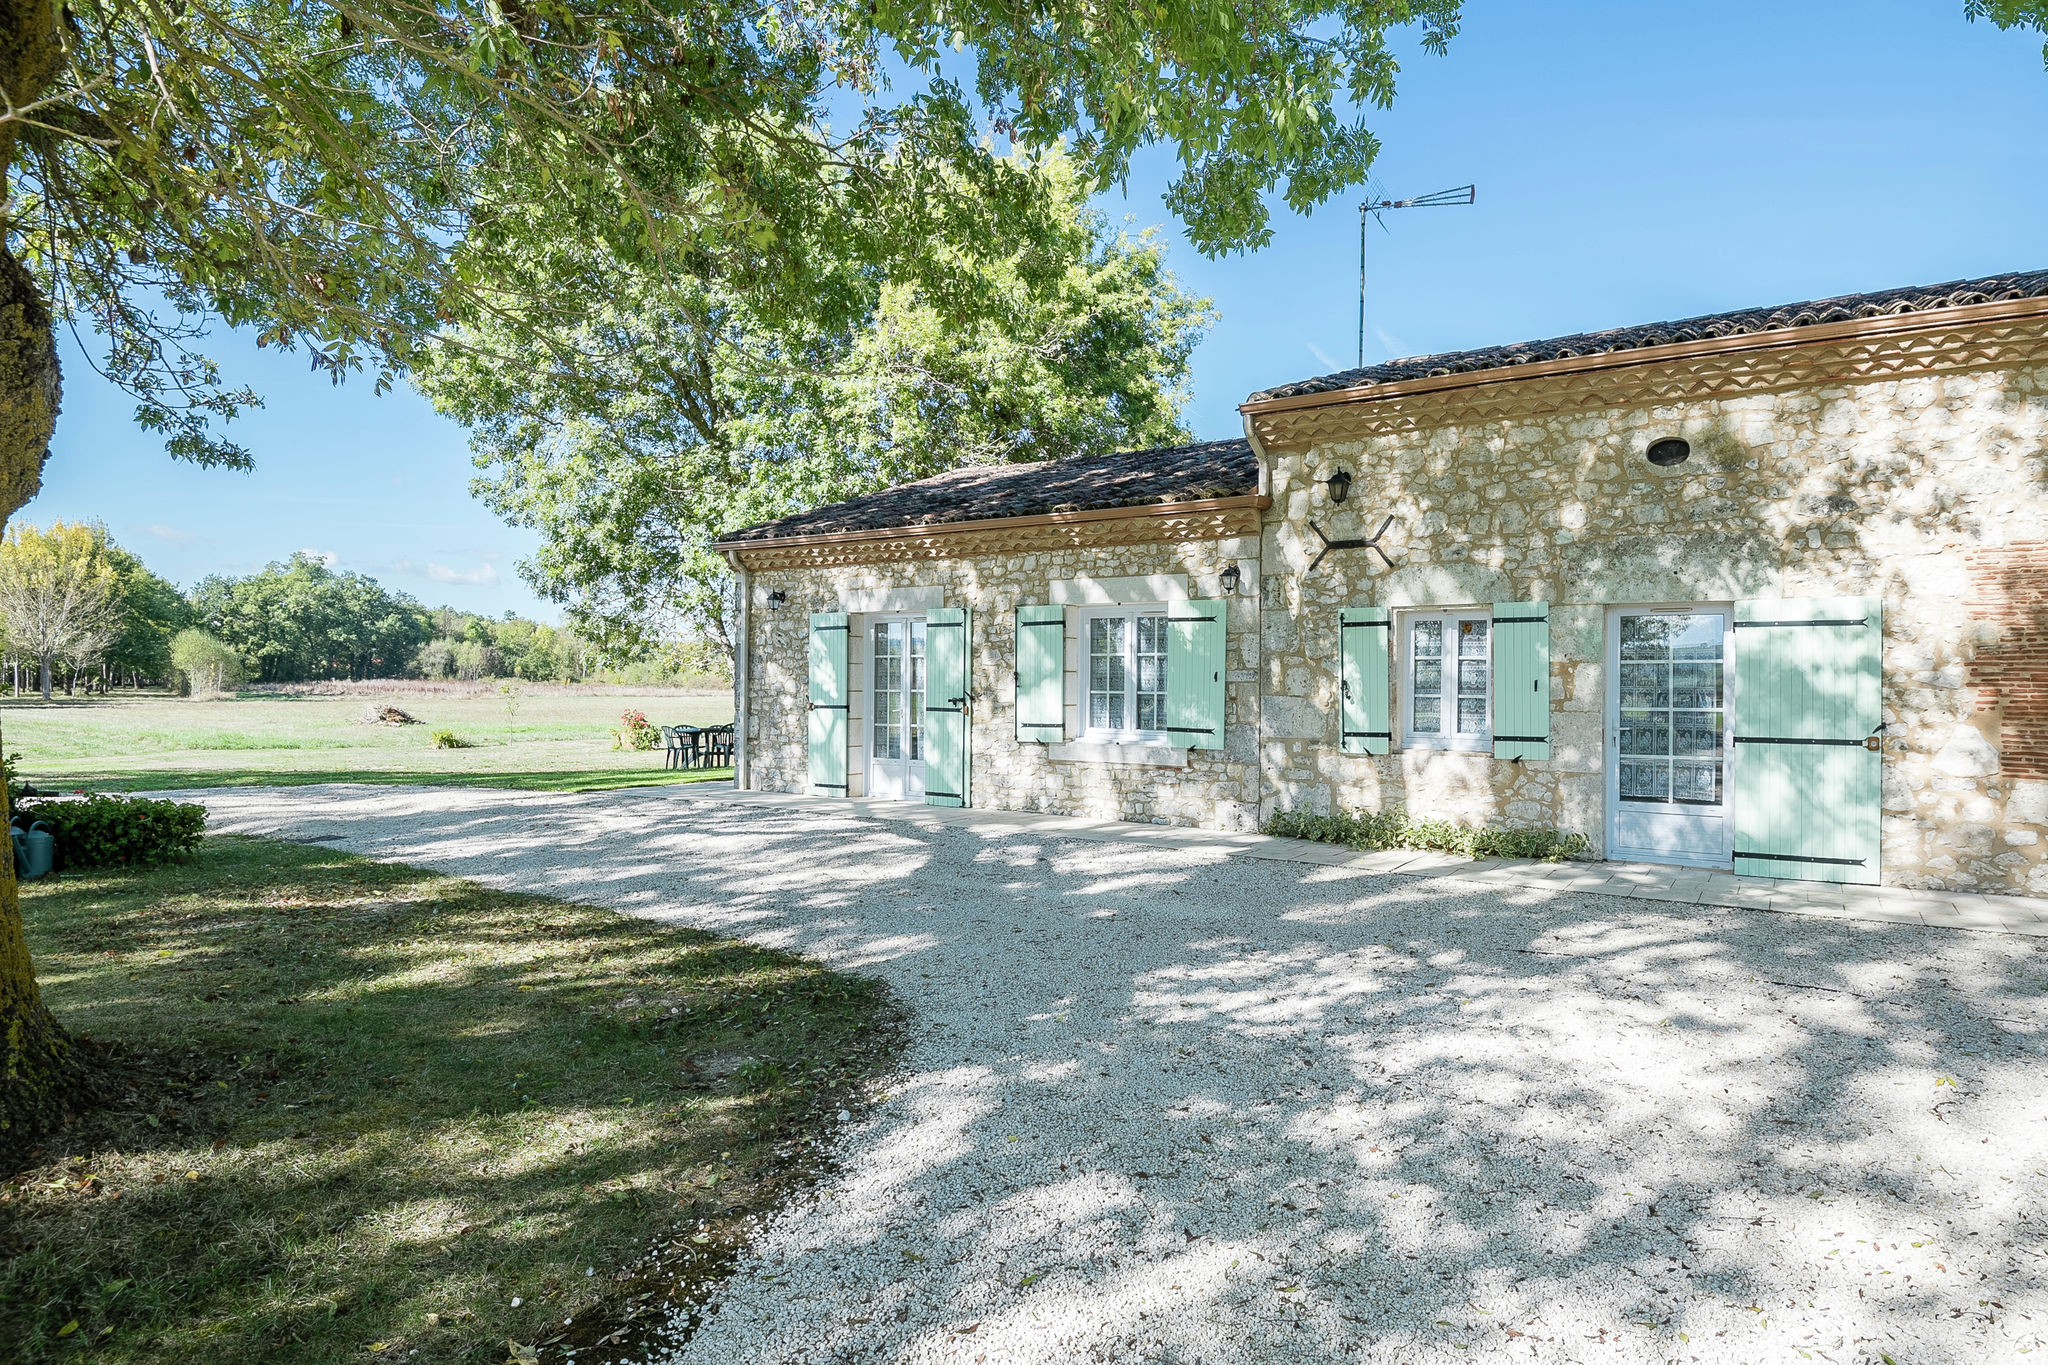 Beautiful home in rural location near Bergerac (8 km), near unique spots